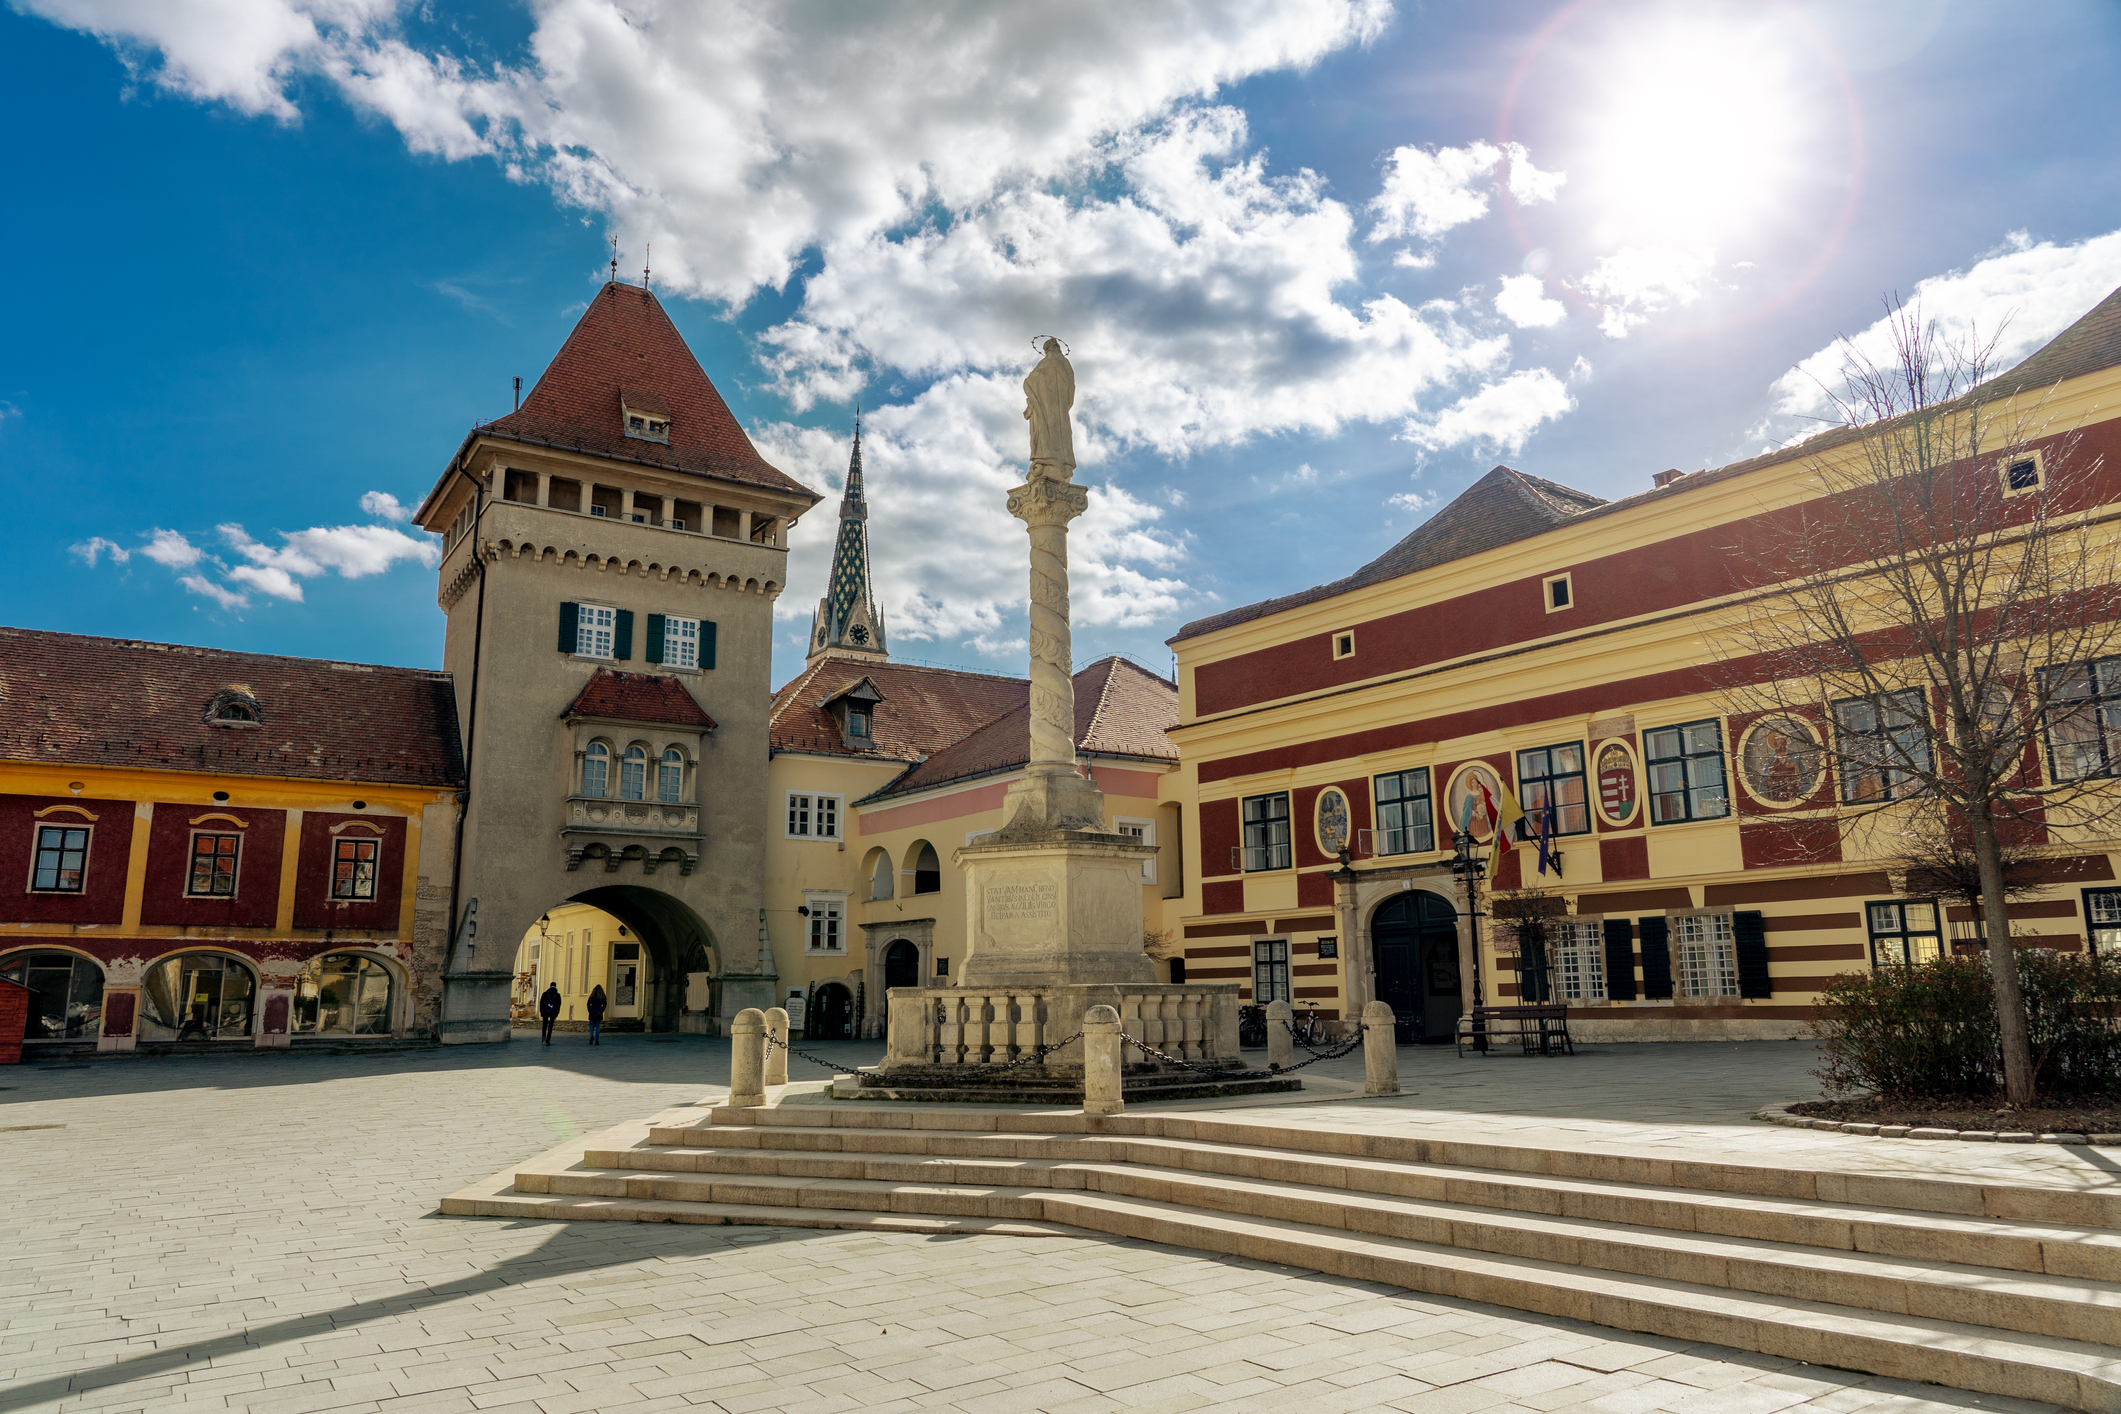 Melyik nyugat-magyarországi város főterét látod?